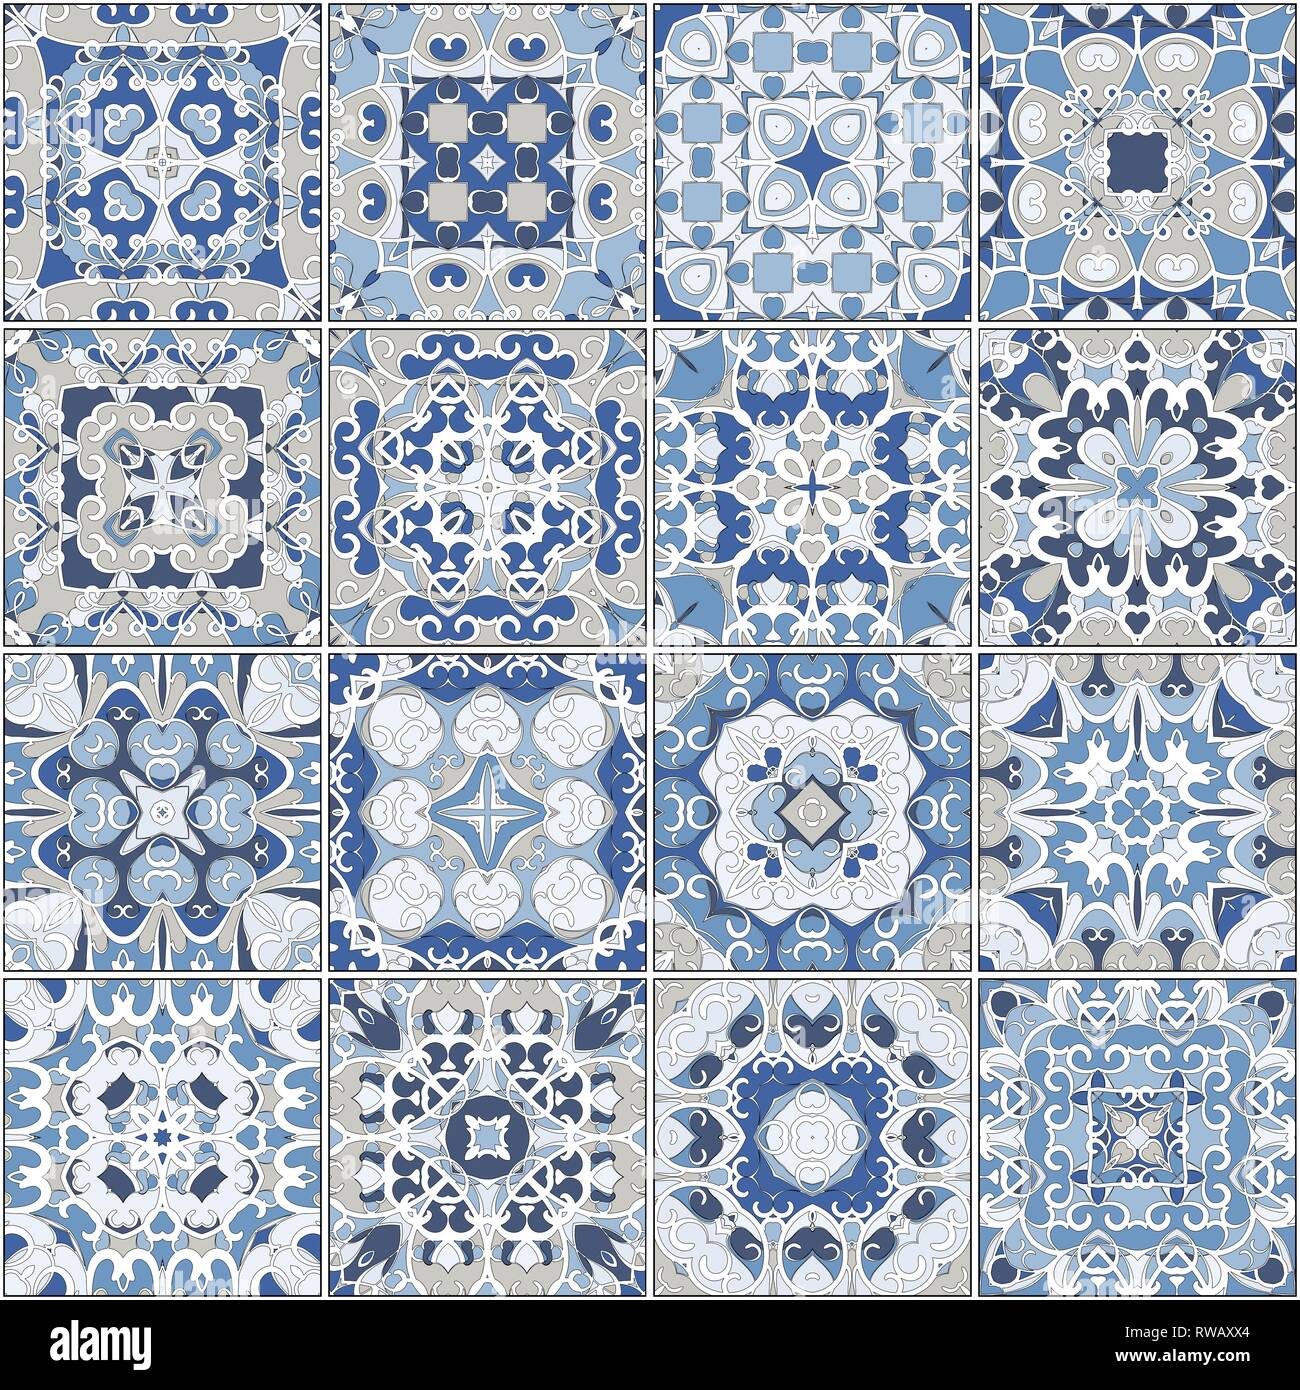 Eine Sammlung von Keramikfliesen in blauen Farben. Eine Reihe von quadratischen Muster im orientalischen Stil. Vector Illustration. Stock Vektor